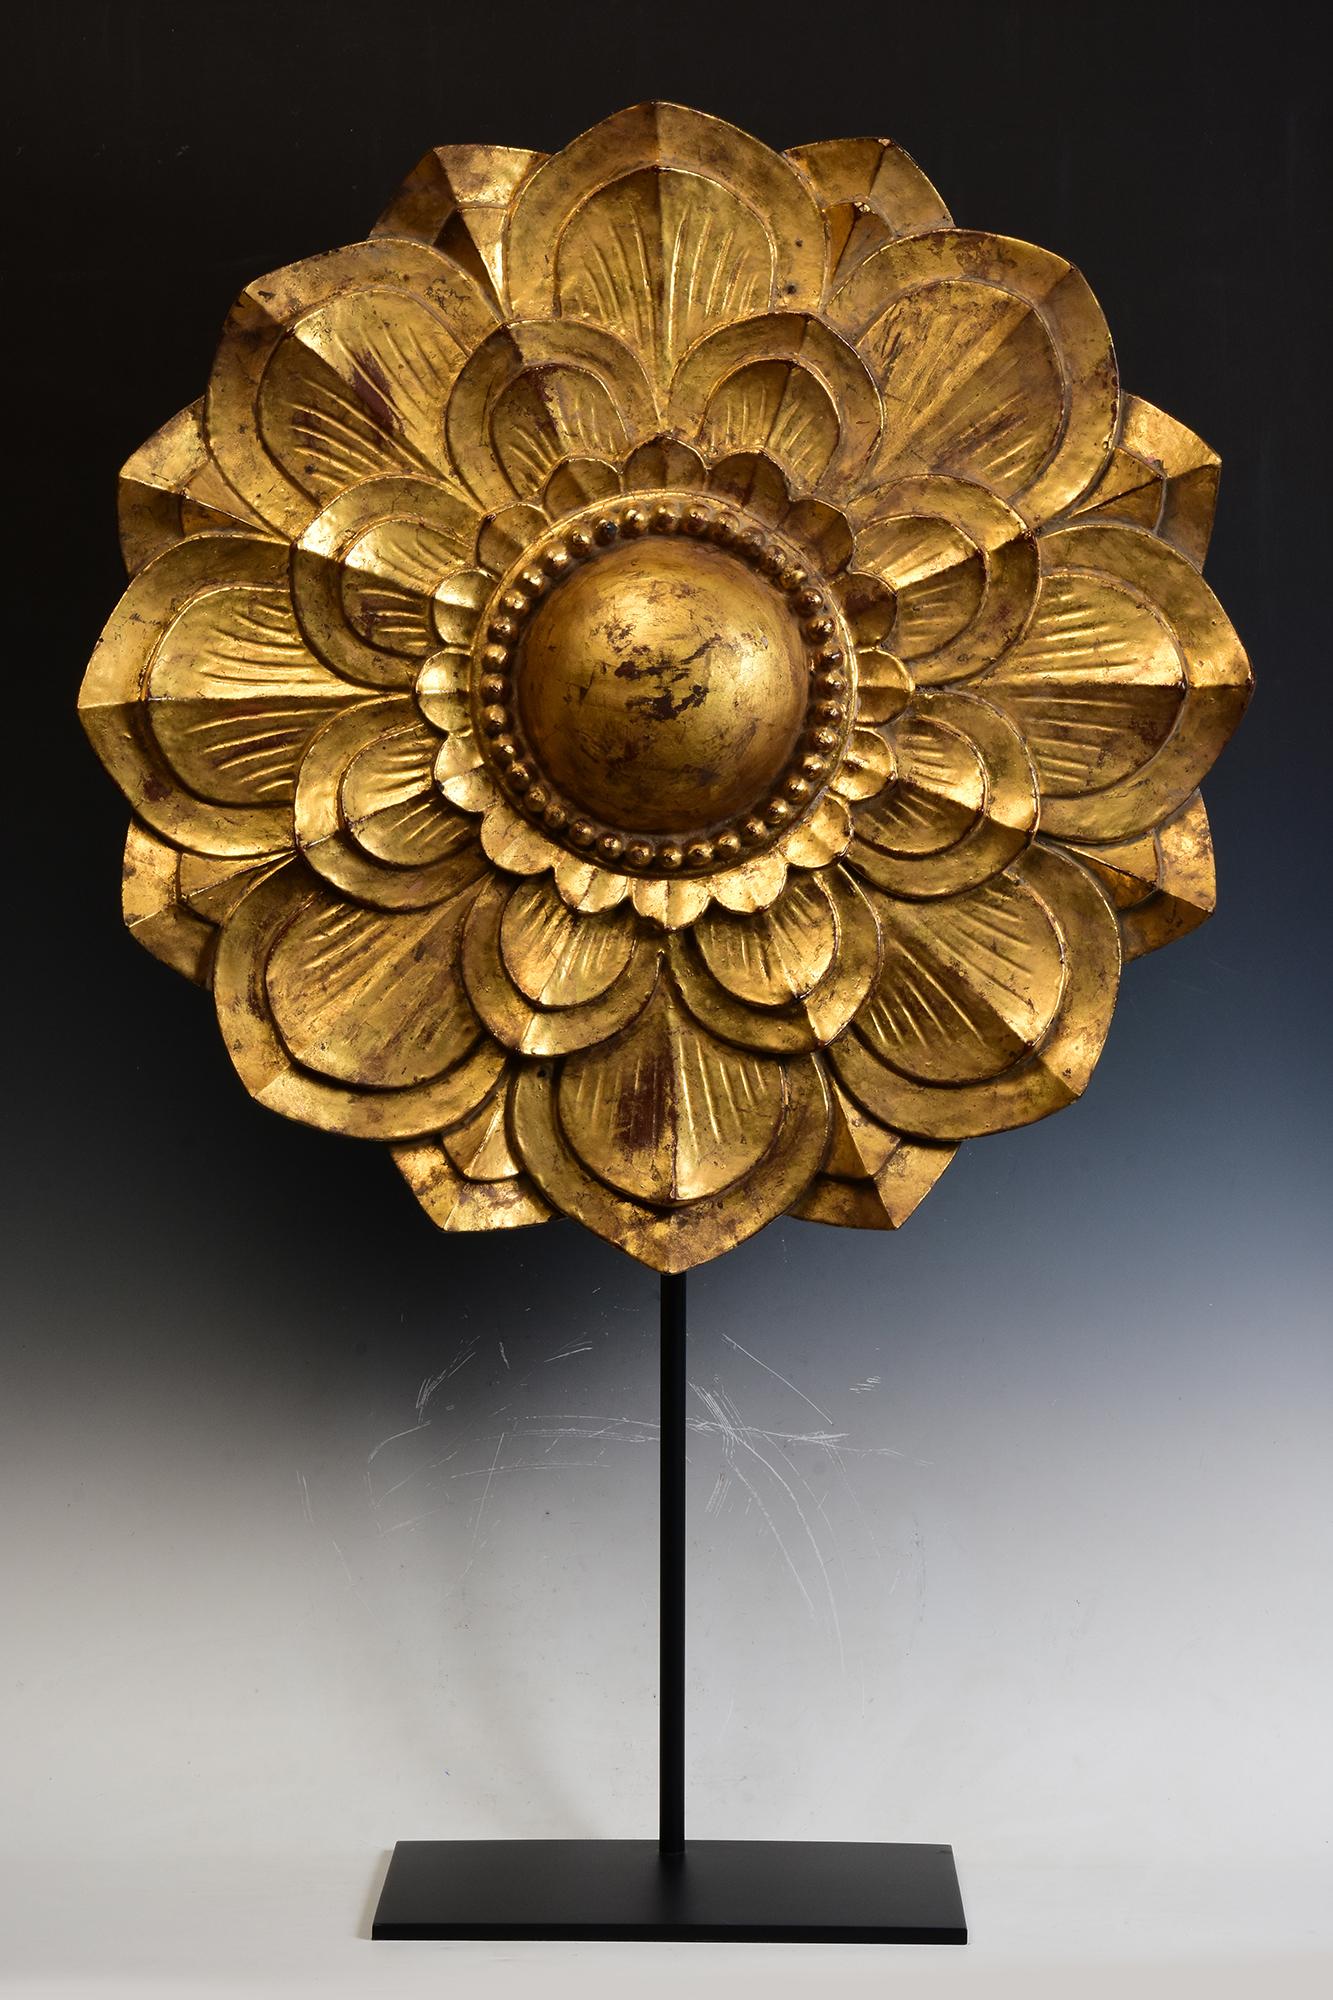 Grande fleur en bois birman décorée avec de l'or doré.

Âge : Birmanie, période Mandalay, 19e siècle
Taille de la fleur uniquement : Diamètre 69.5 A.I.C. / Epaisseur 10 A.I.C.
Hauteur avec support : 108 C.I.C.
Condit : Bon état général (quelques